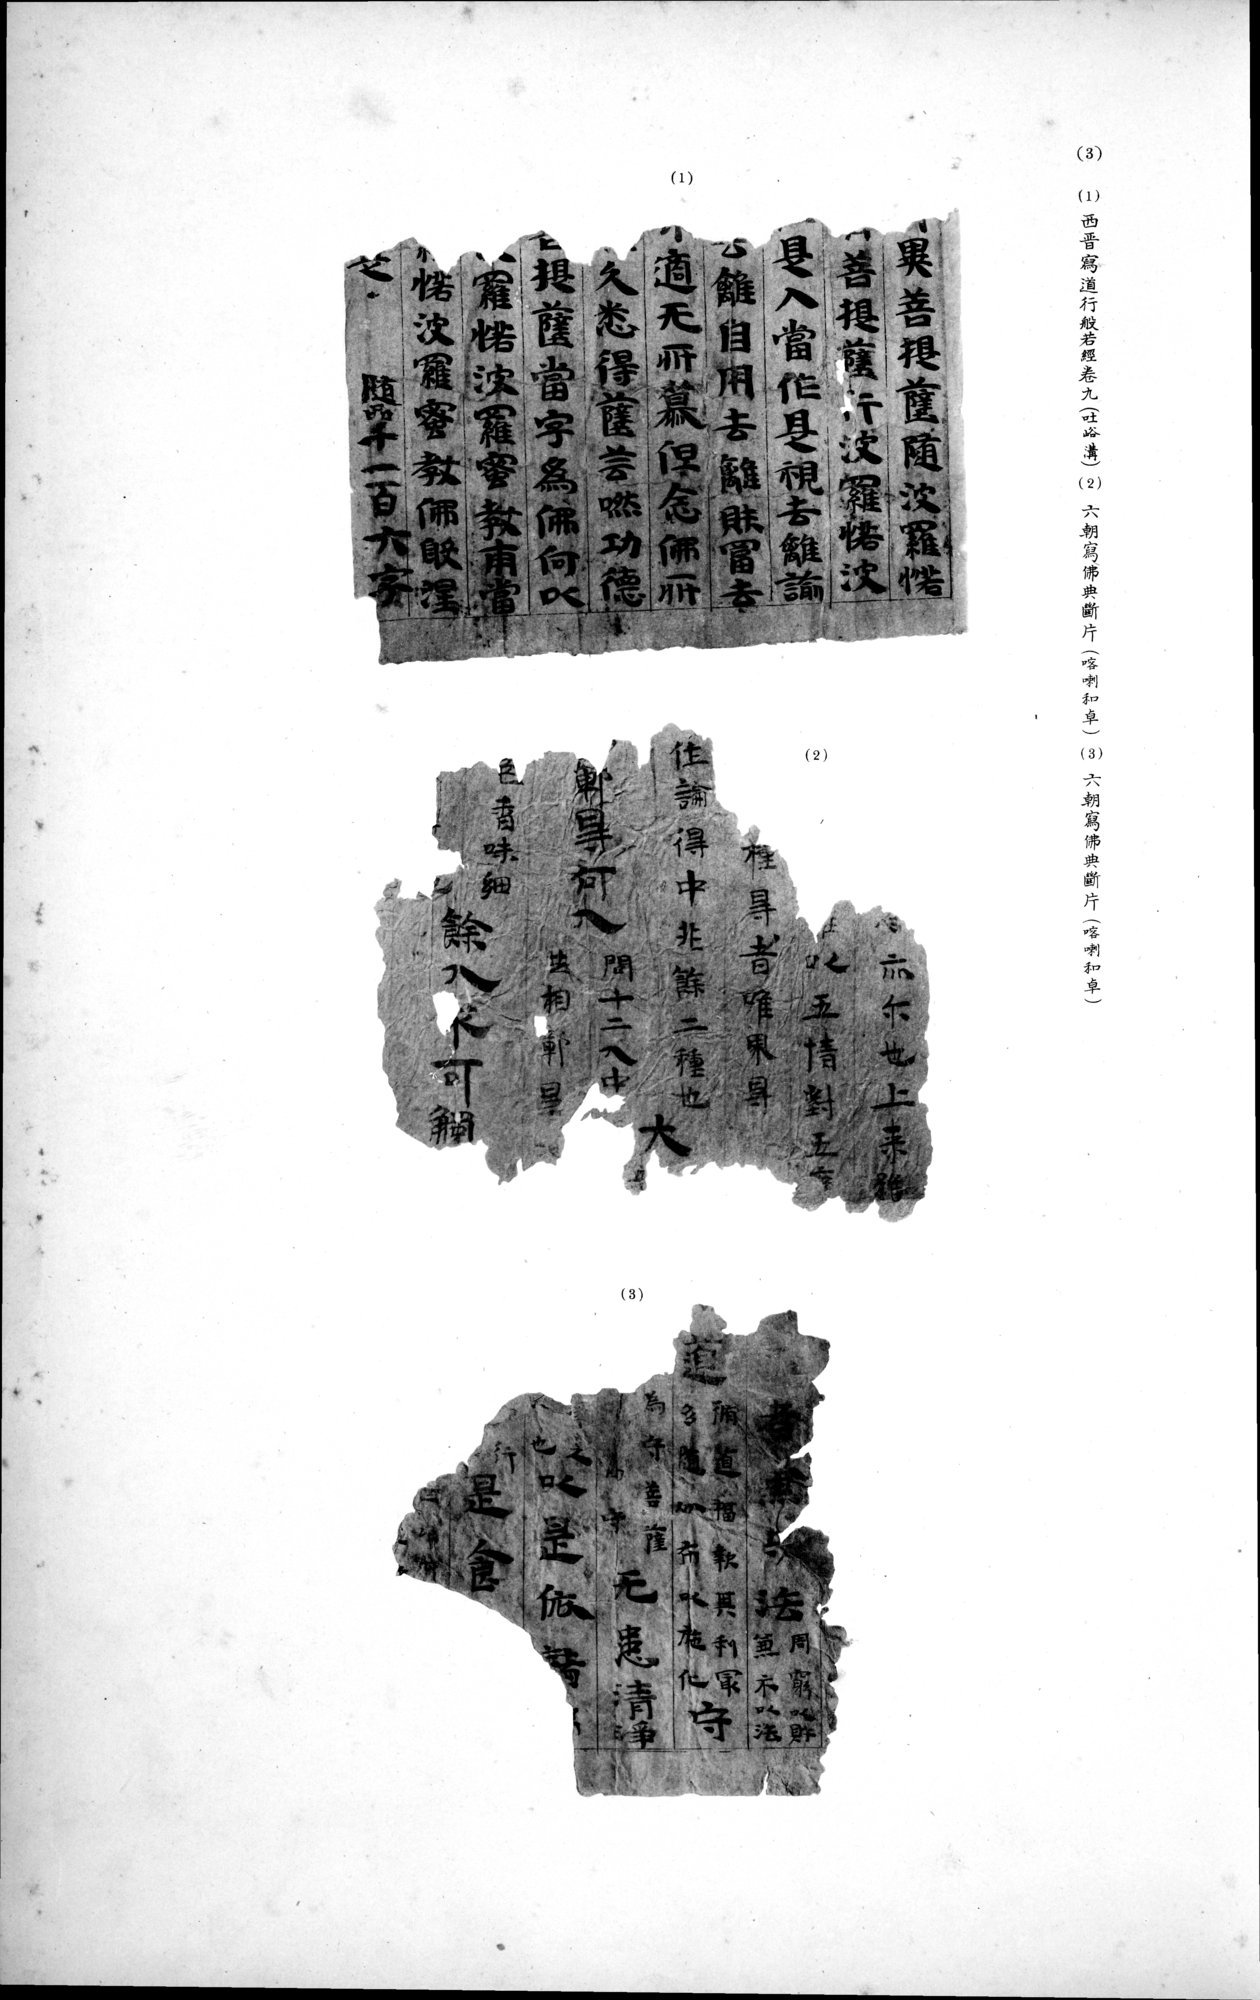 西域考古図譜 : vol.2 / Page 21 (Grayscale High Resolution Image)